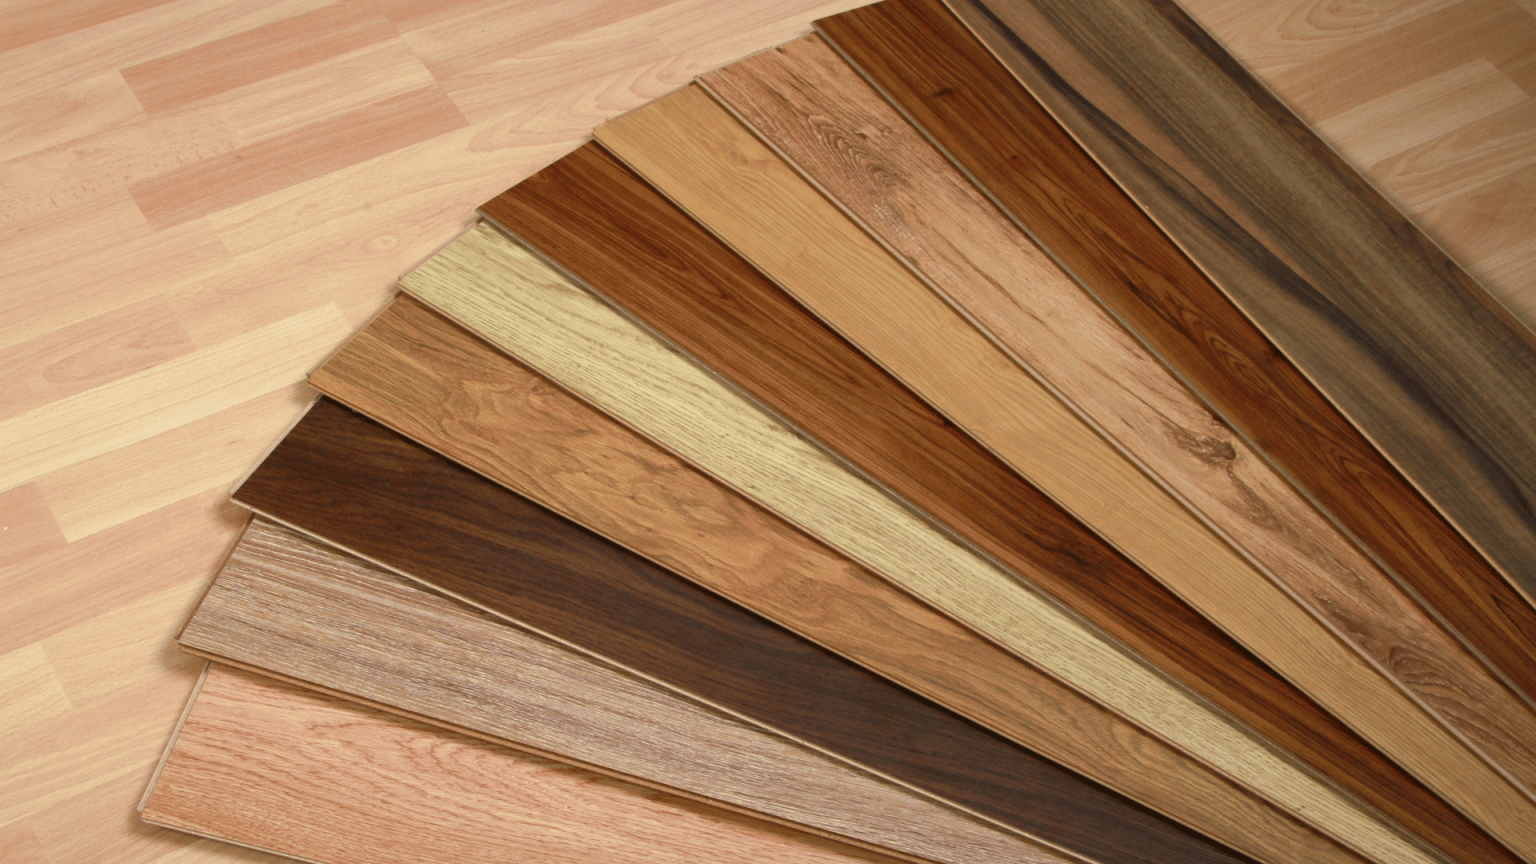 Sau khi bản vẽ thiết kế nội thất gỗ công nghiệp được hoàn thành, Kiến trúc sư sẽ nghiên cứu bản vẽ và thống kế vật tư